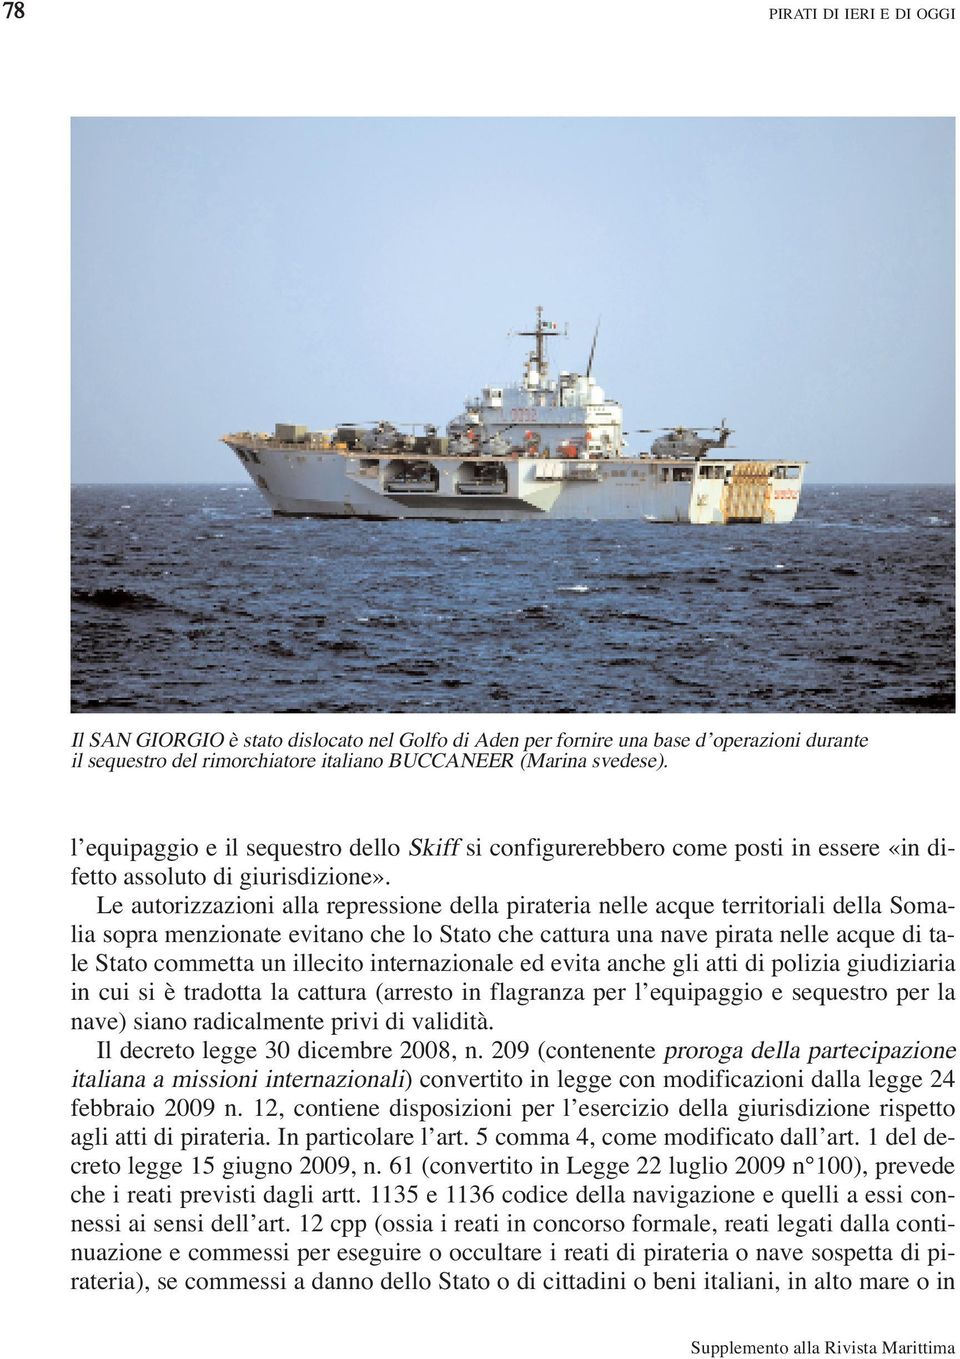 Le autorizzazioni alla repressione della pirateria nelle acque territoriali della Somalia sopra menzionate evitano che lo Stato che cattura una nave pirata nelle acque di tale Stato commetta un